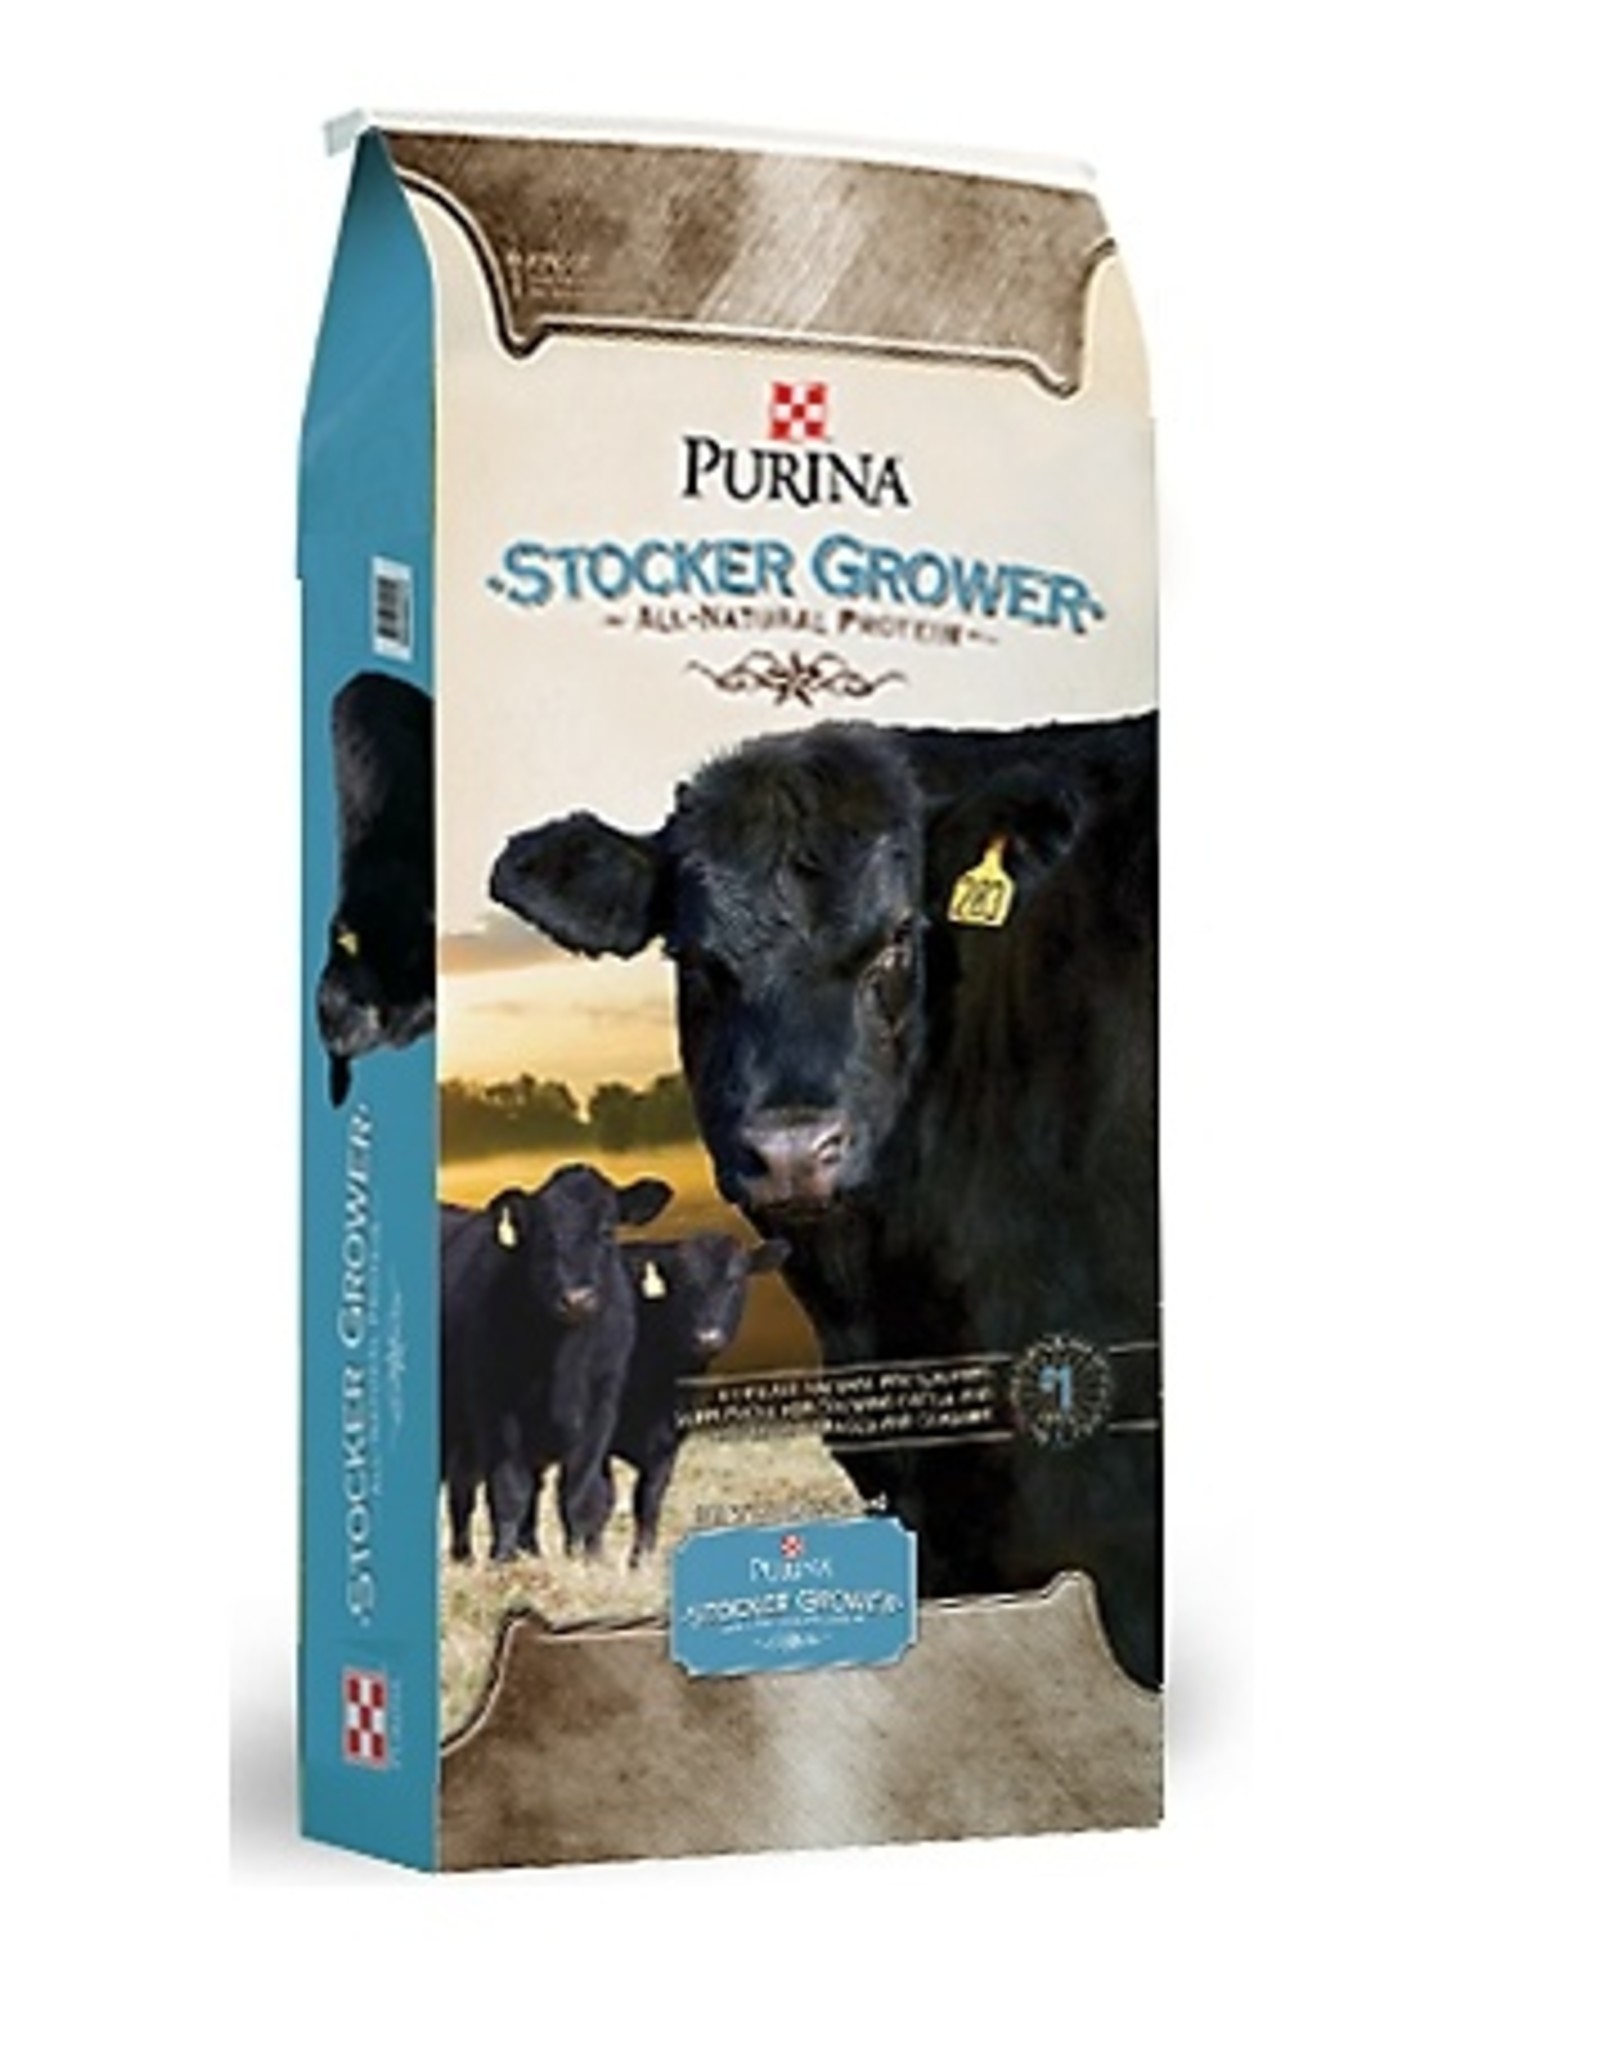 Cattle Cattle - Stock Grower Pellet 50lb